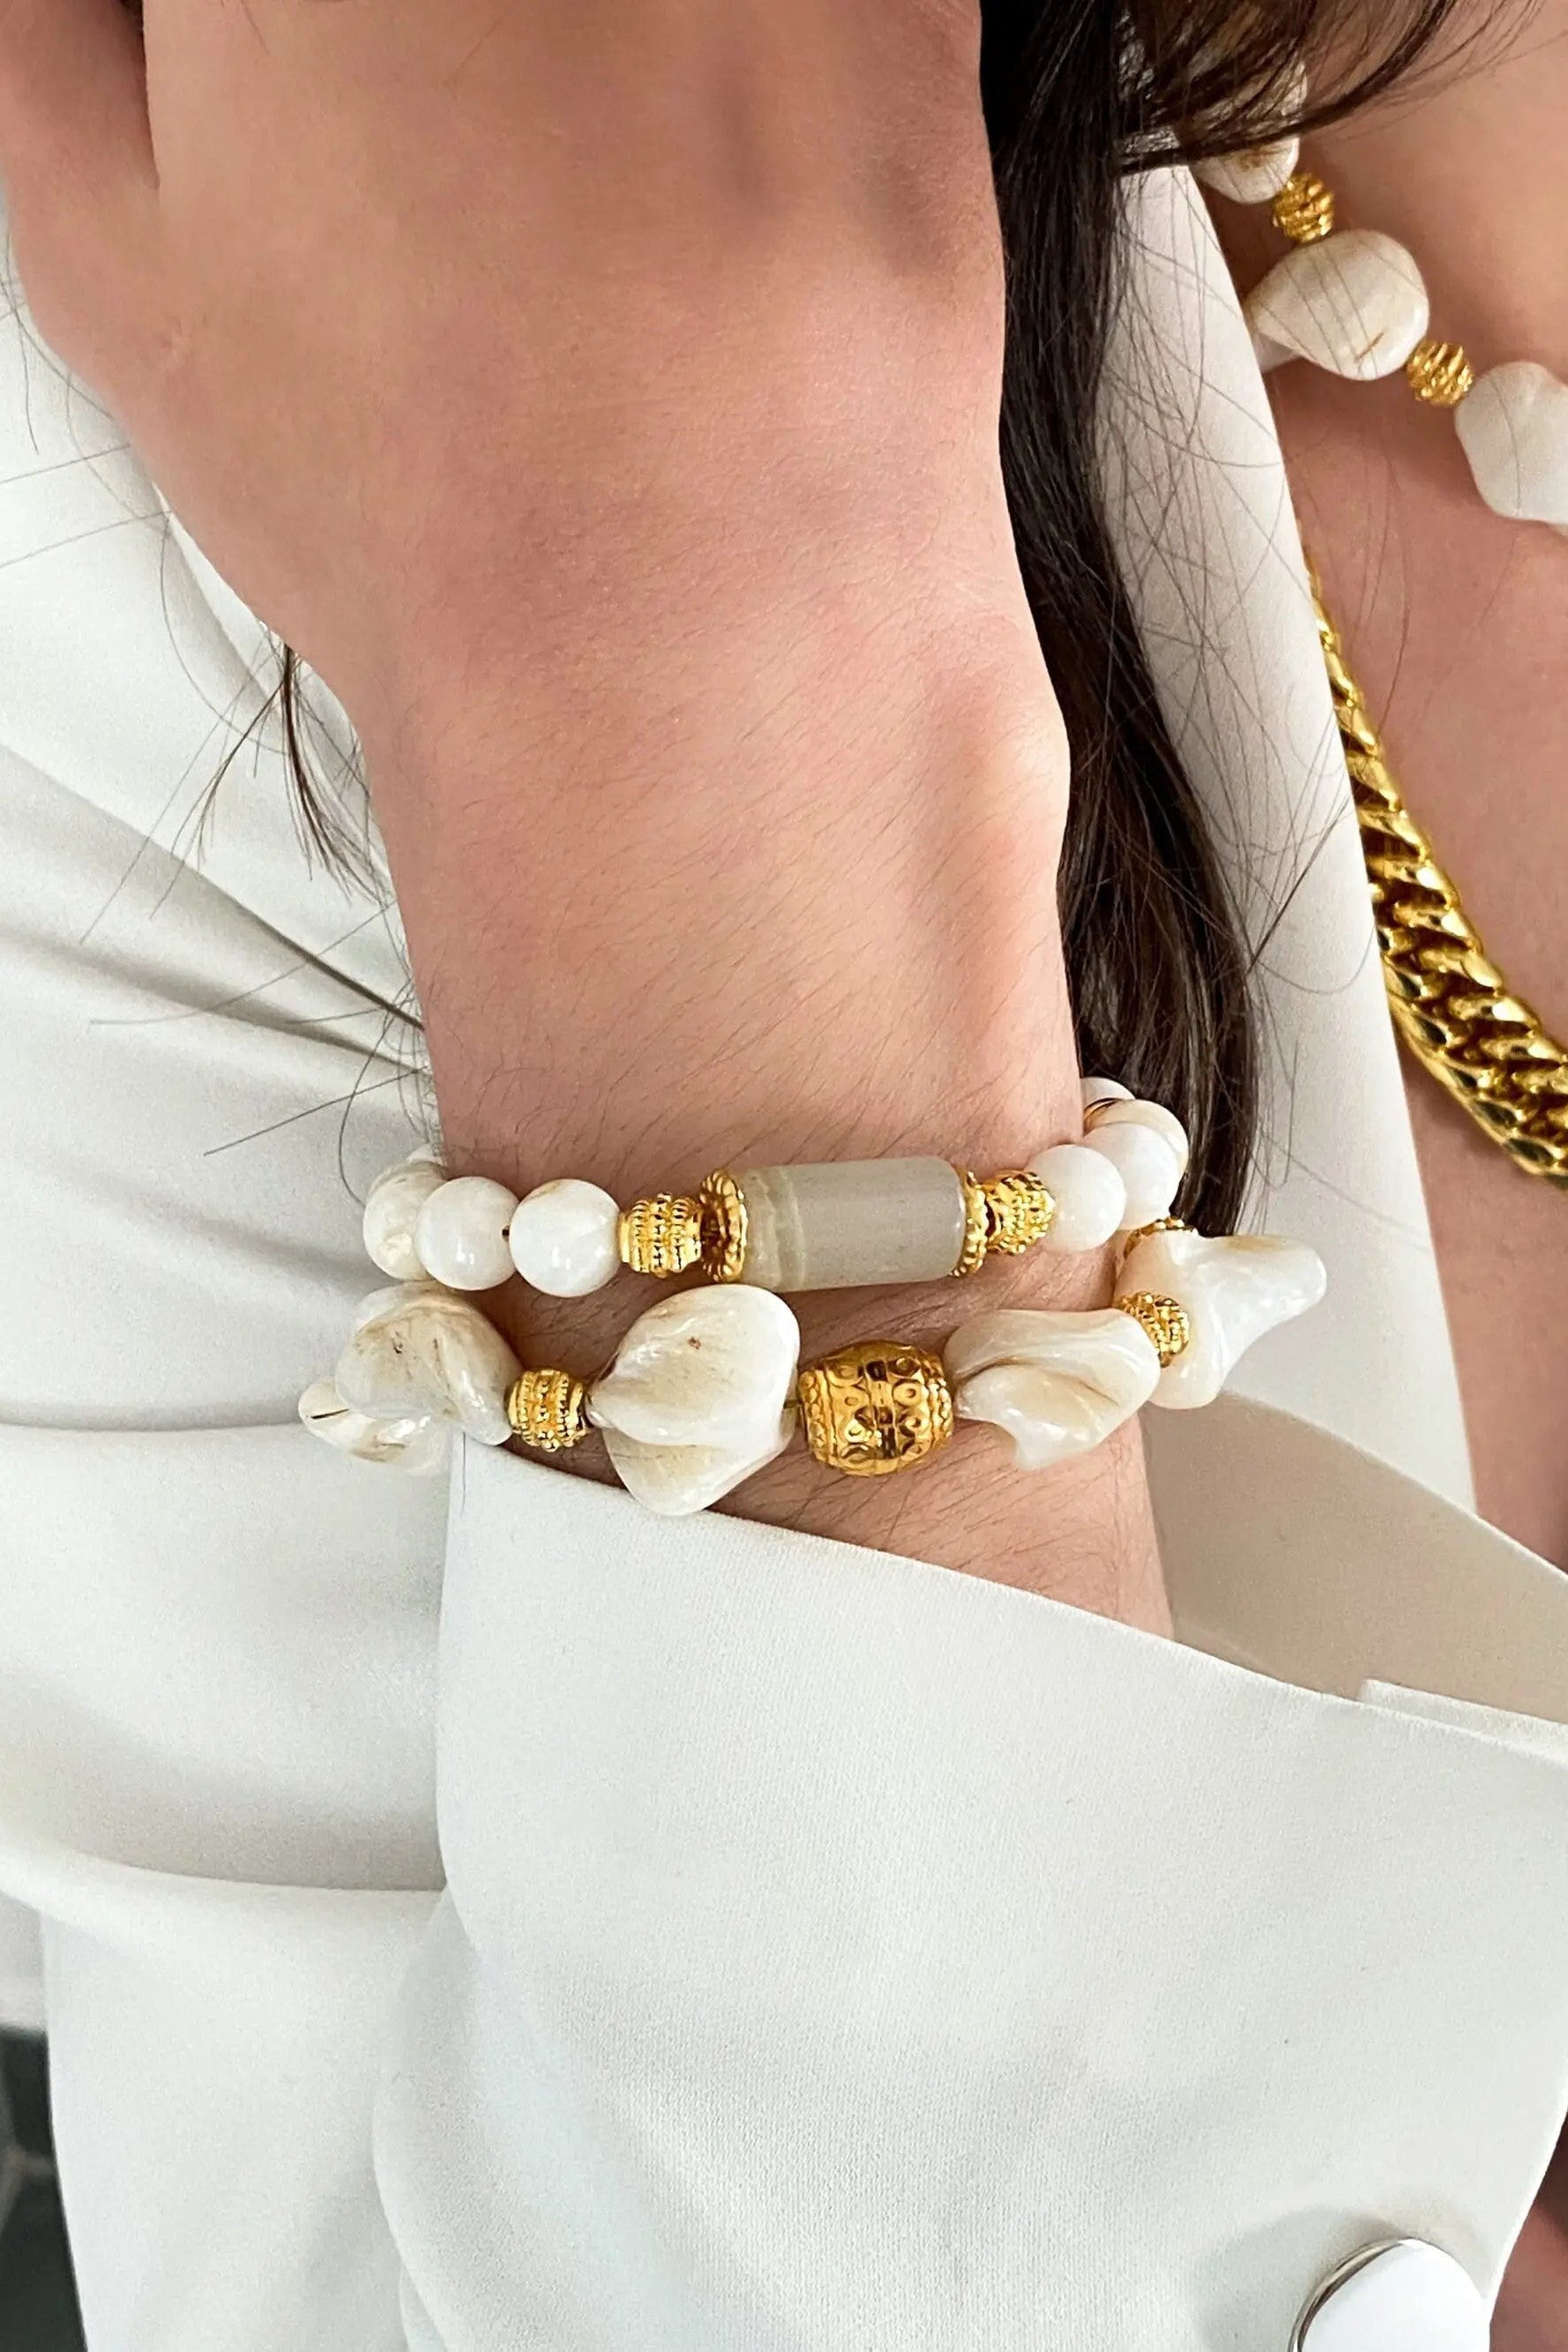 Jade & Coral Bracelet White Shell Bracelet Boho Chic Summer Bracelet for Woman Gift for Her, CELIA